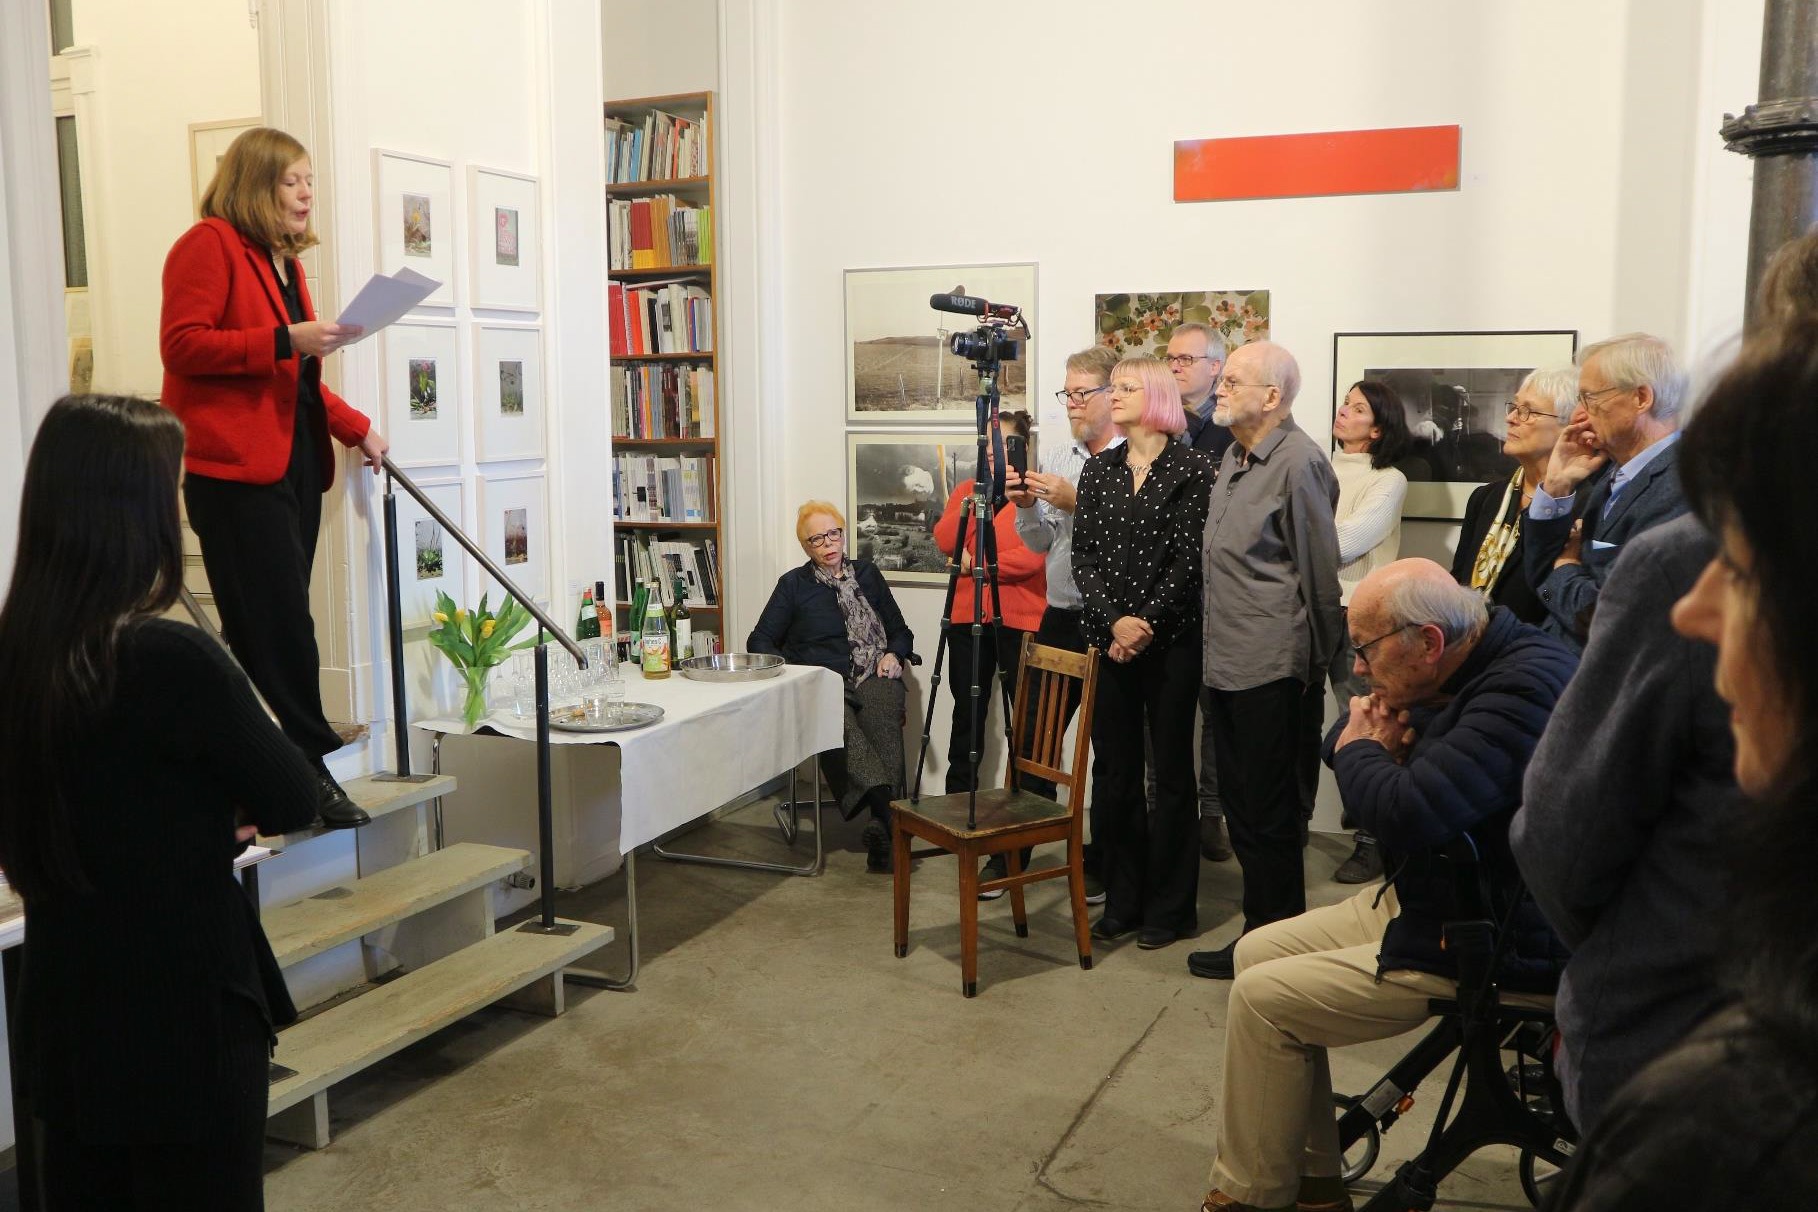 Rahel Puffert speech during art opening for Guenter Westphal